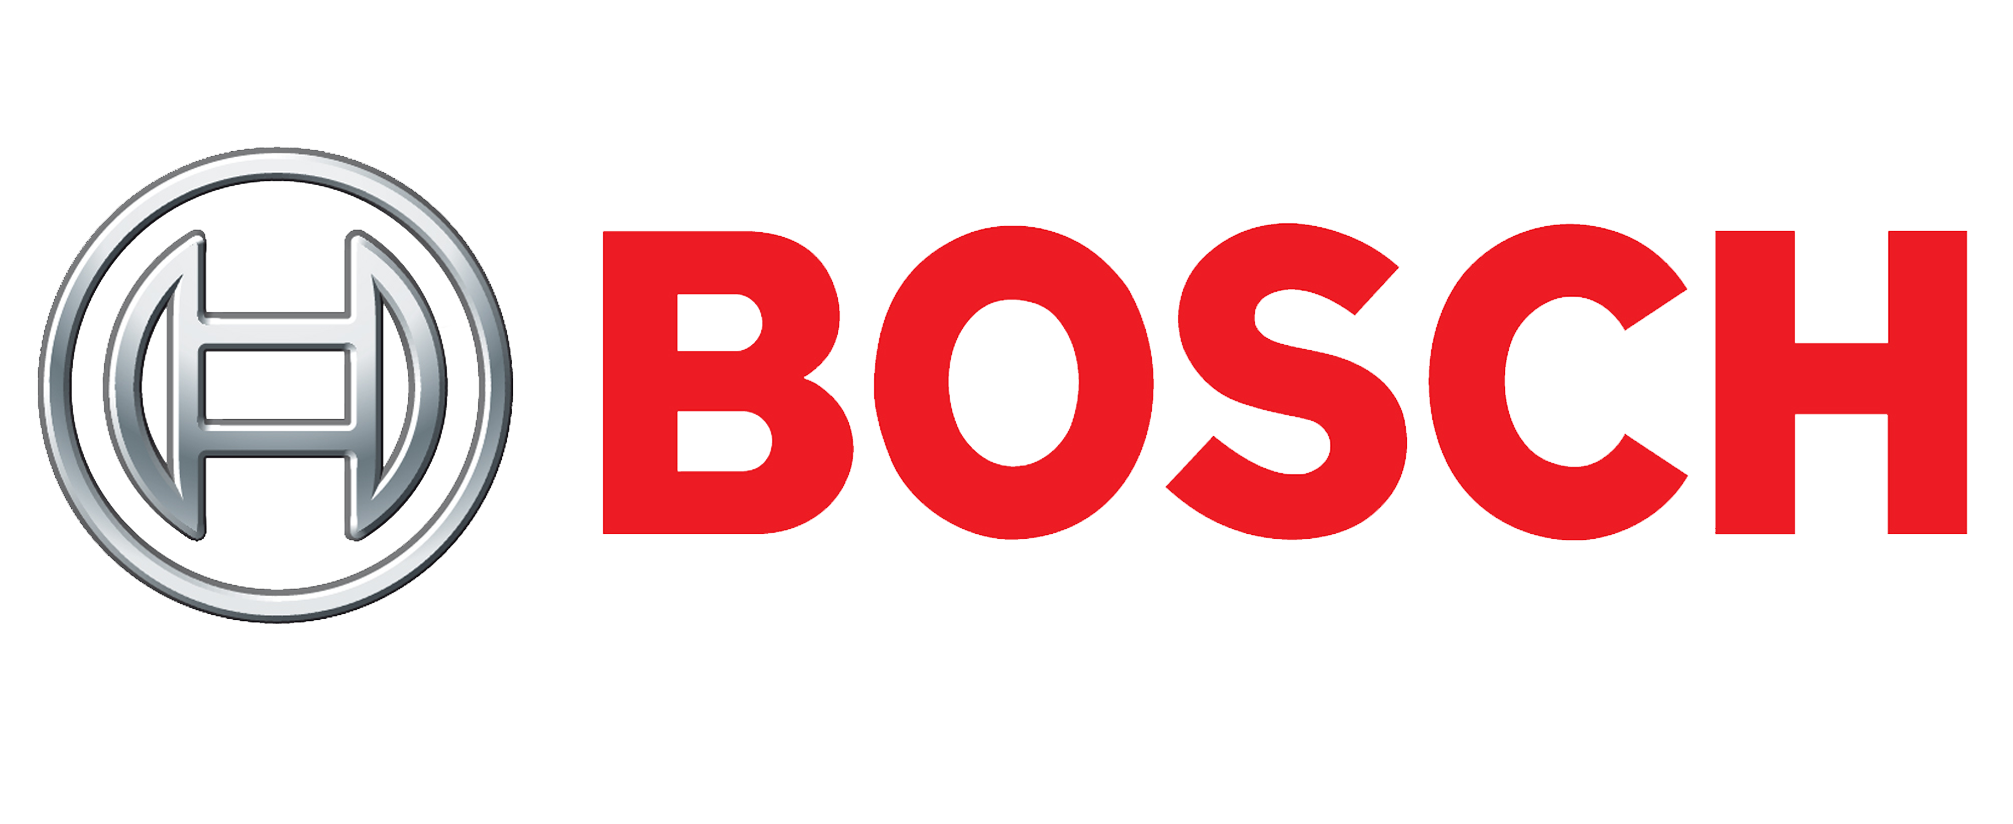 Servicio tecnico Bosch